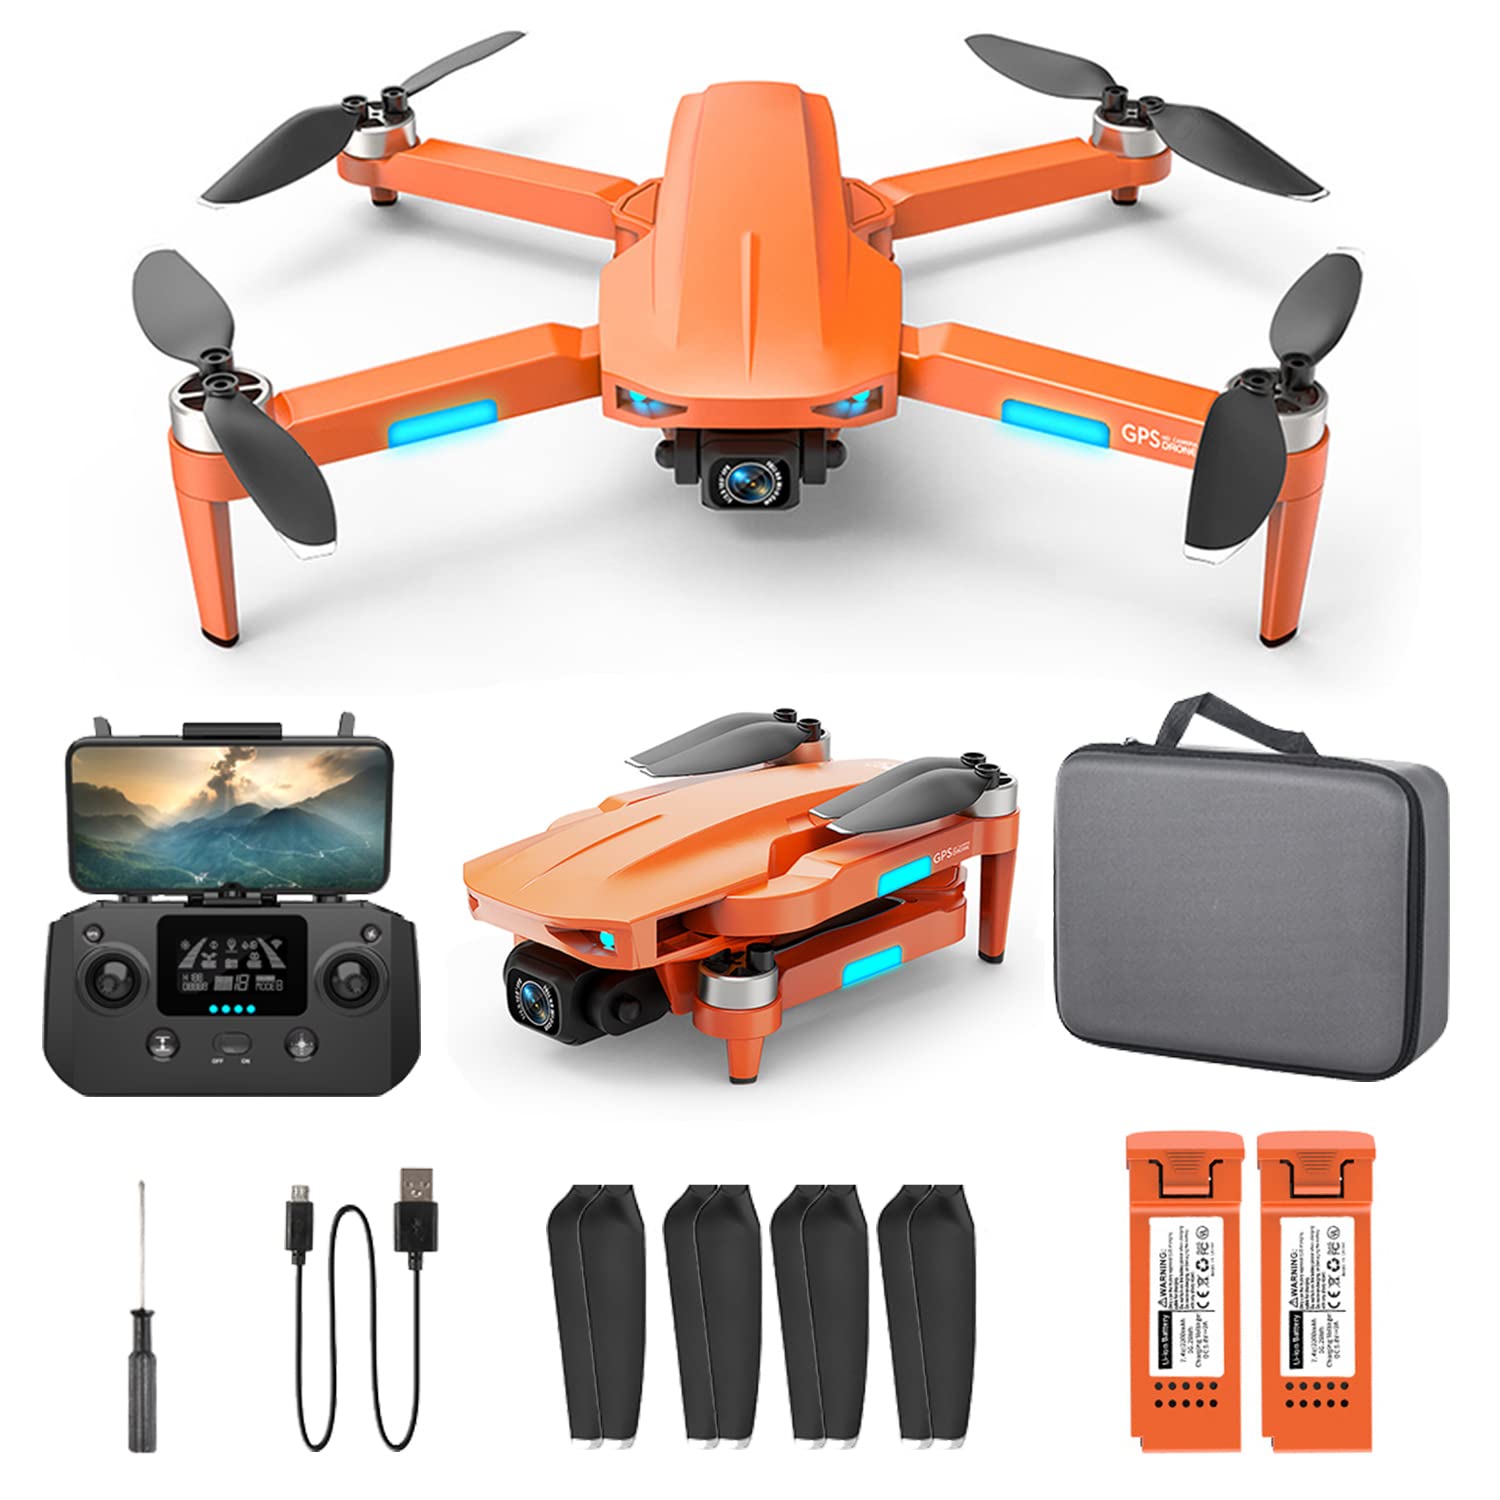 HHD GPS Drohne mit 4K Kamera, 50 Min Flugzeit, Drohne Ultraleicht Unter 249g, 1000m Reichweite, Brushless Motor, 54 km/h Max Geschwindigkeit, Anfängerfreundlich von HHD